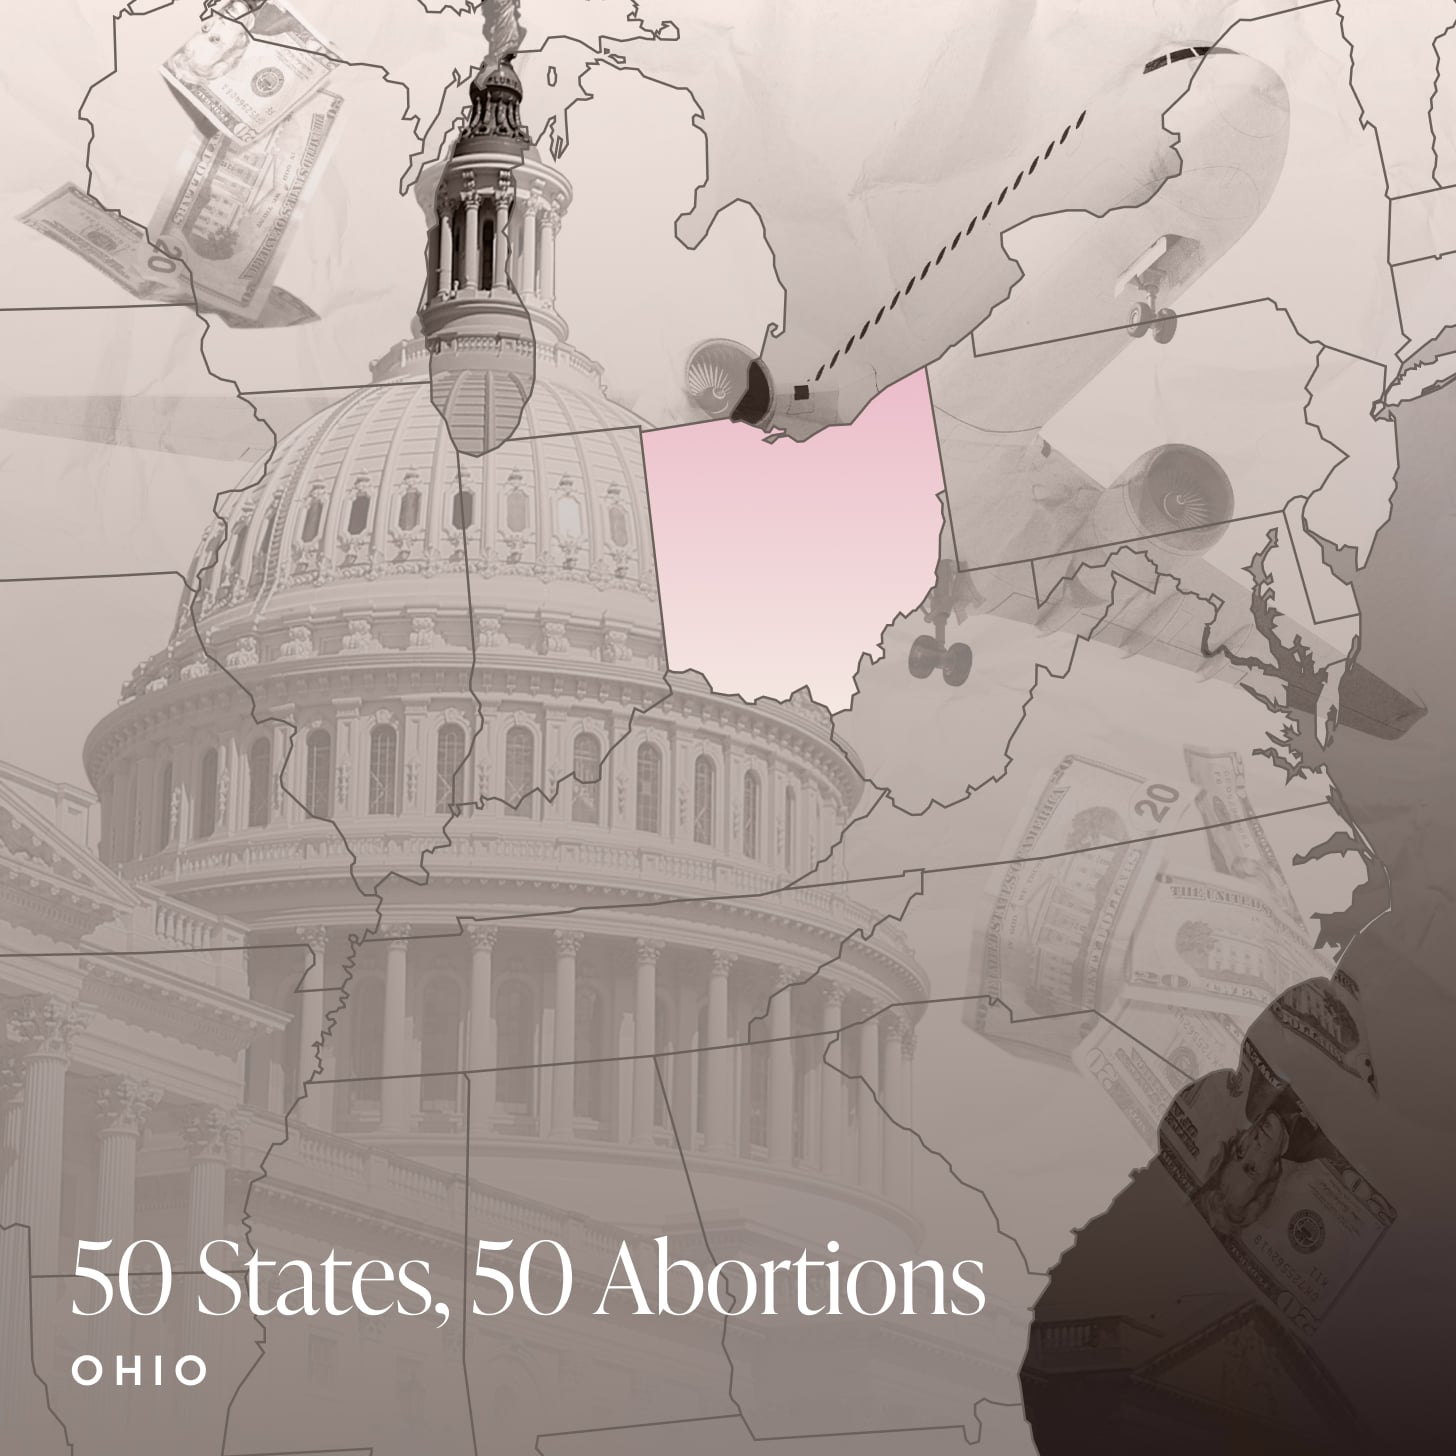 Ohio Abortion Story